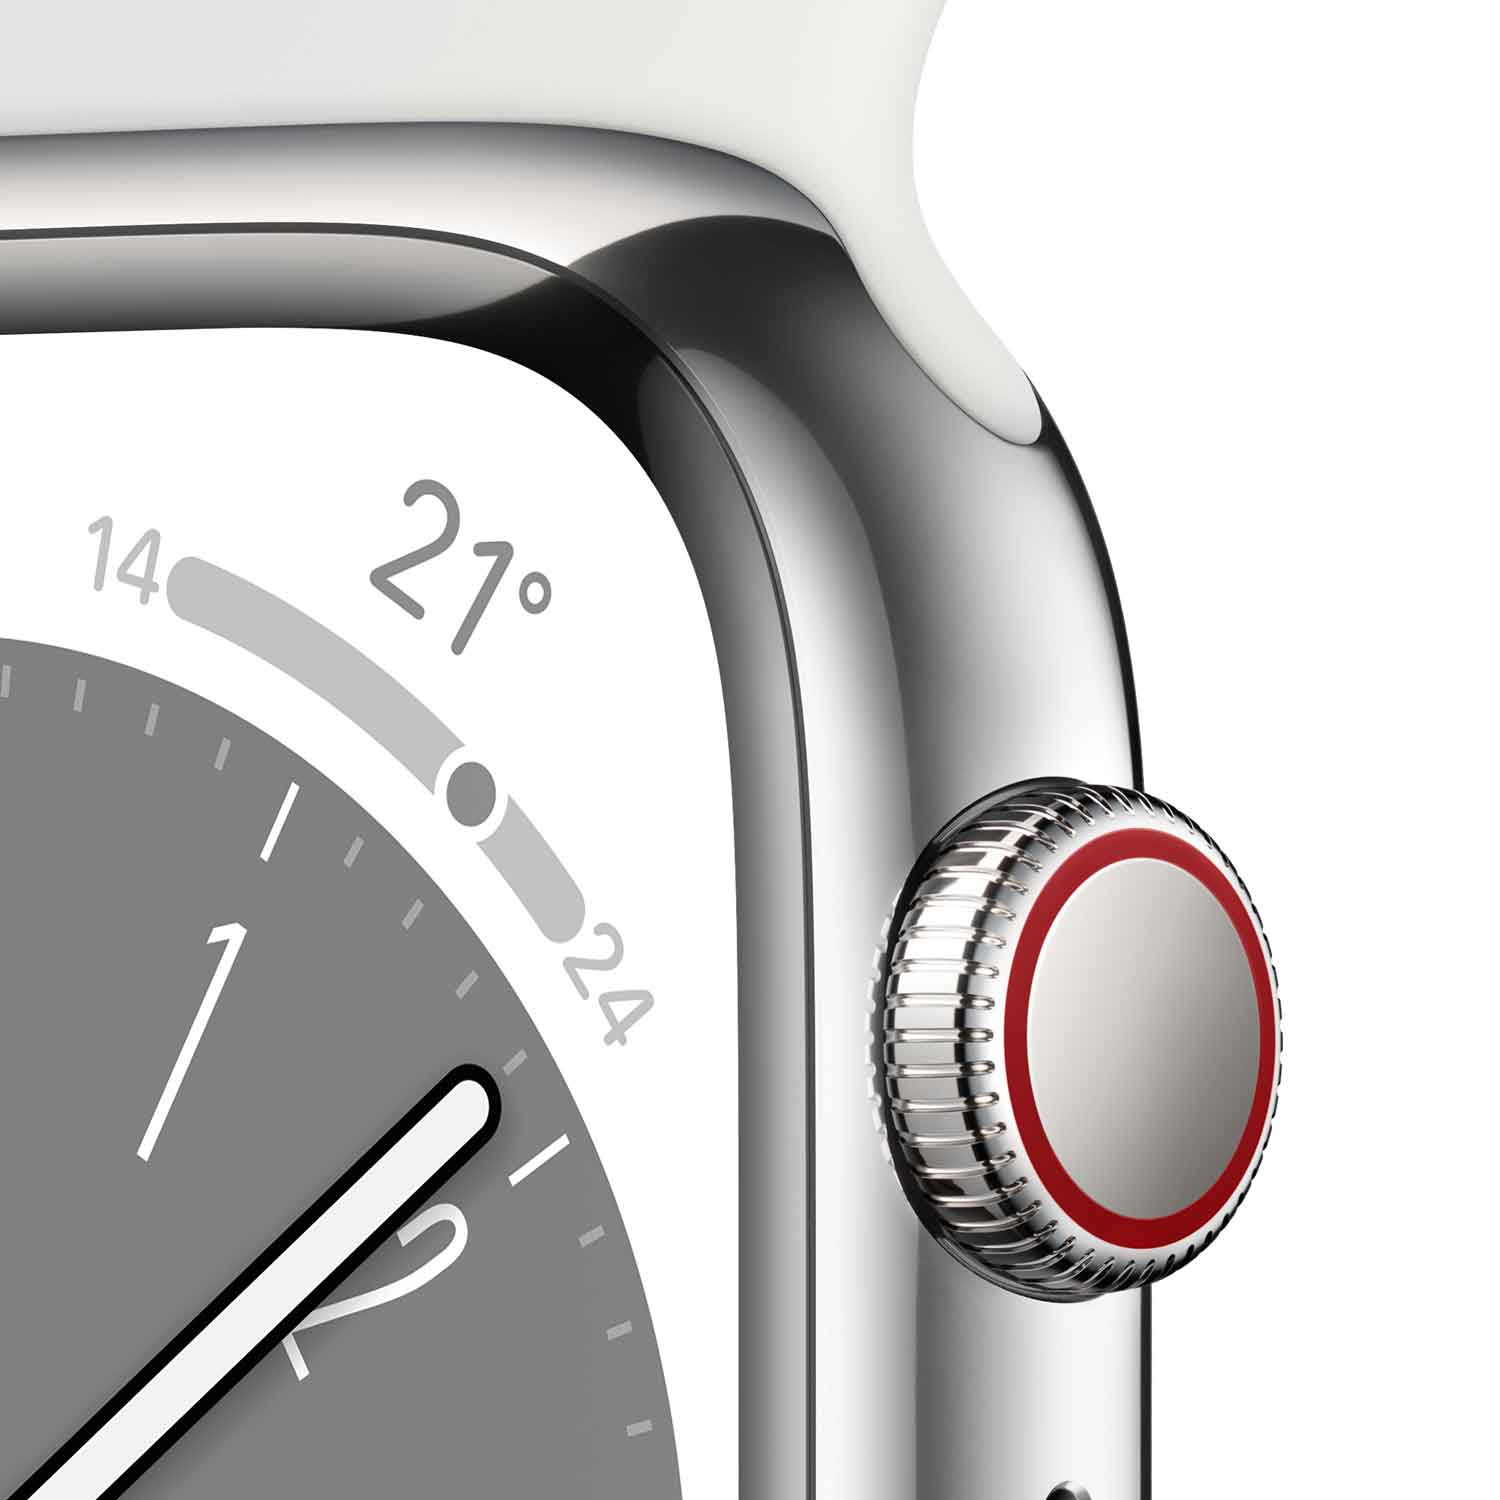 Apple Watch S8 Edelstahl Cellular 41mm Silber (Sportarmband weiß)